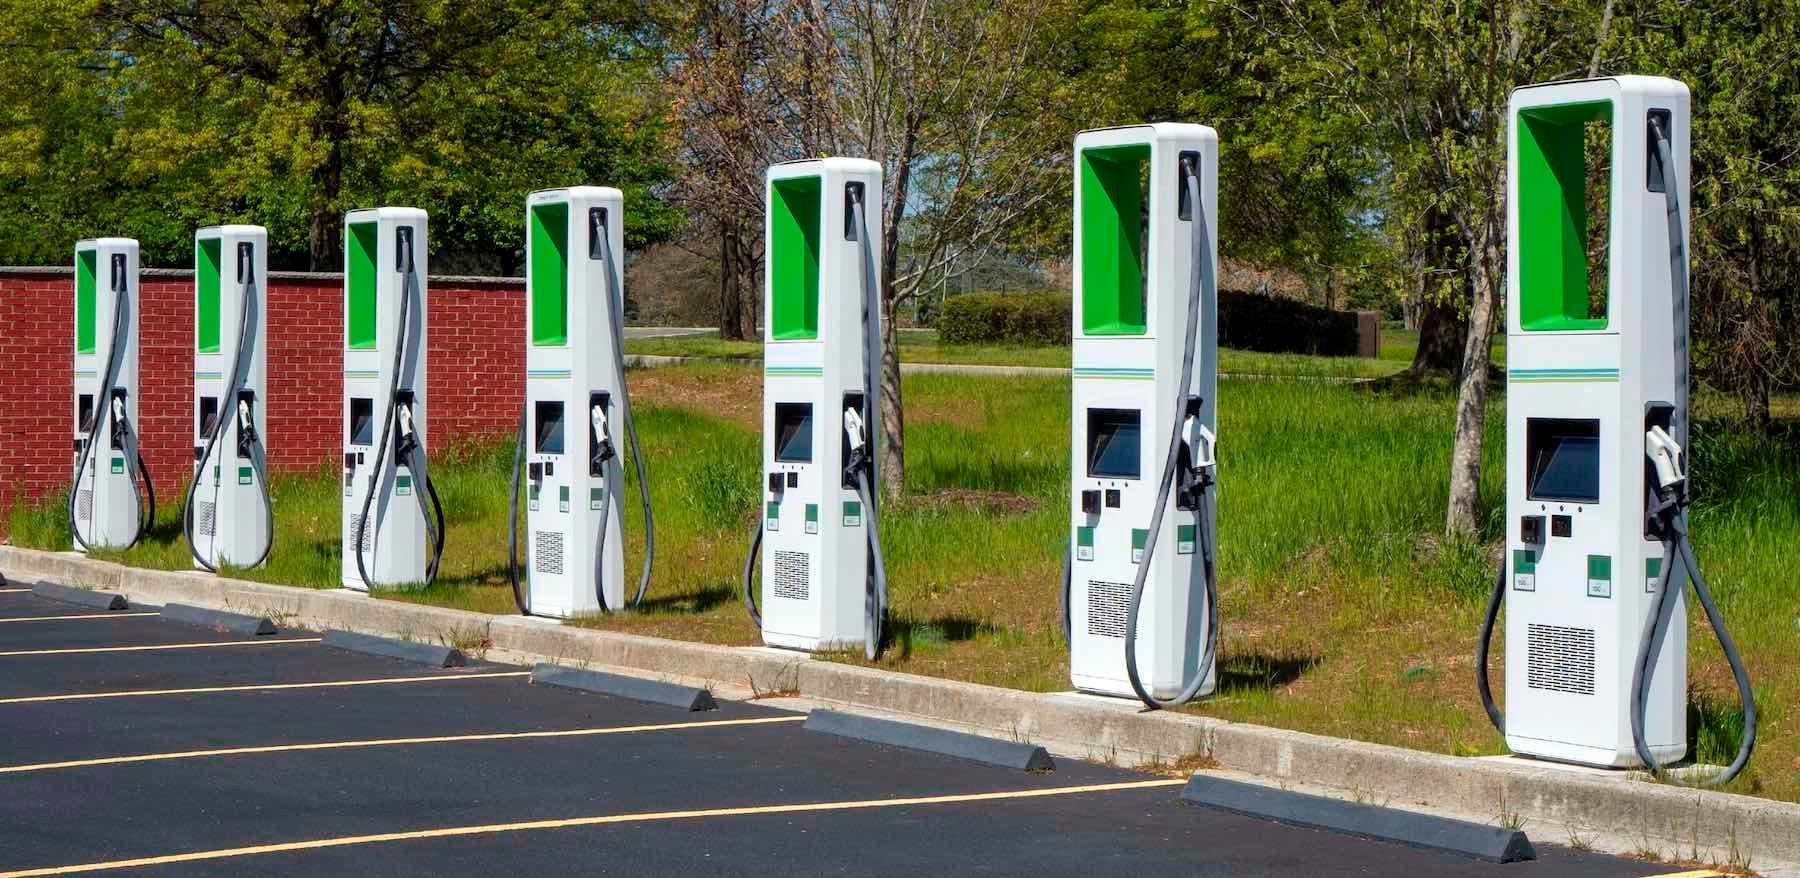 Lo sợ một ngày hệ thống trạm sạc Tesla thống trị nước Mỹ, 7 nhà sản xuất ô tô liền lập liên doanh cung cấp dịch vụ sạc xe điện - liệu VinFast có gia nhập? - Ảnh 2.